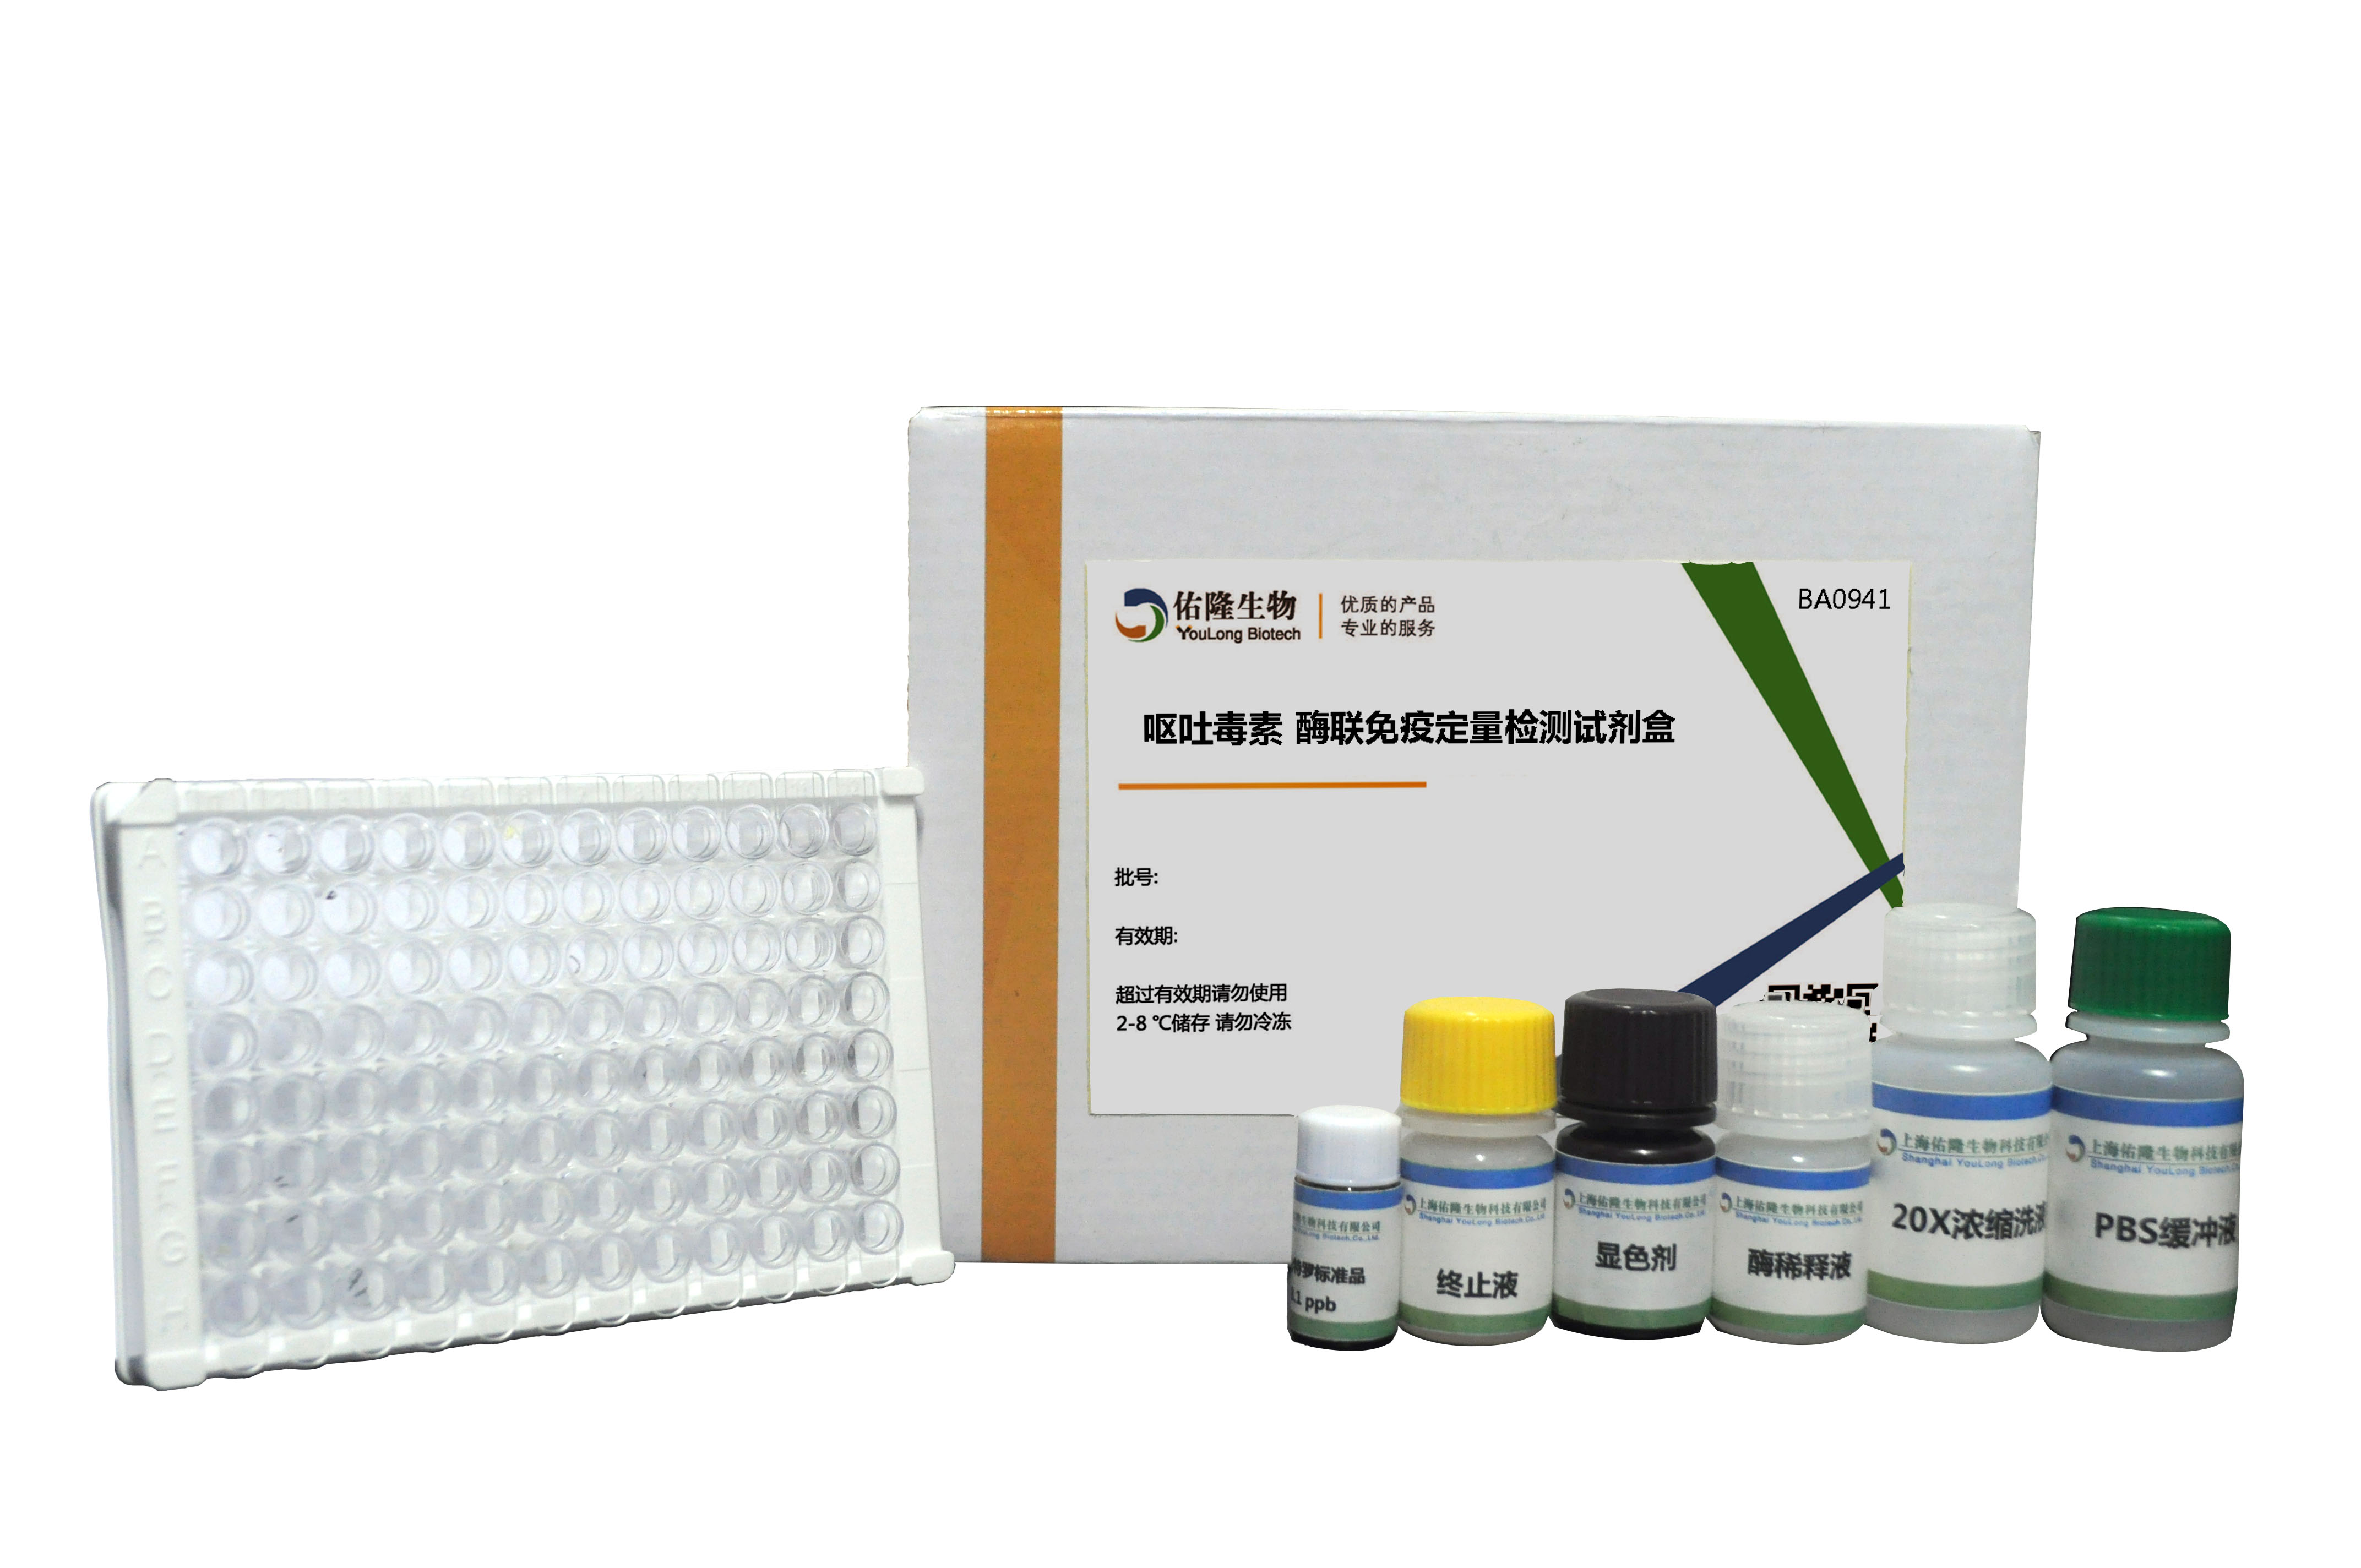 呕吐毒素(DON)酶联免疫定量检测试剂盒